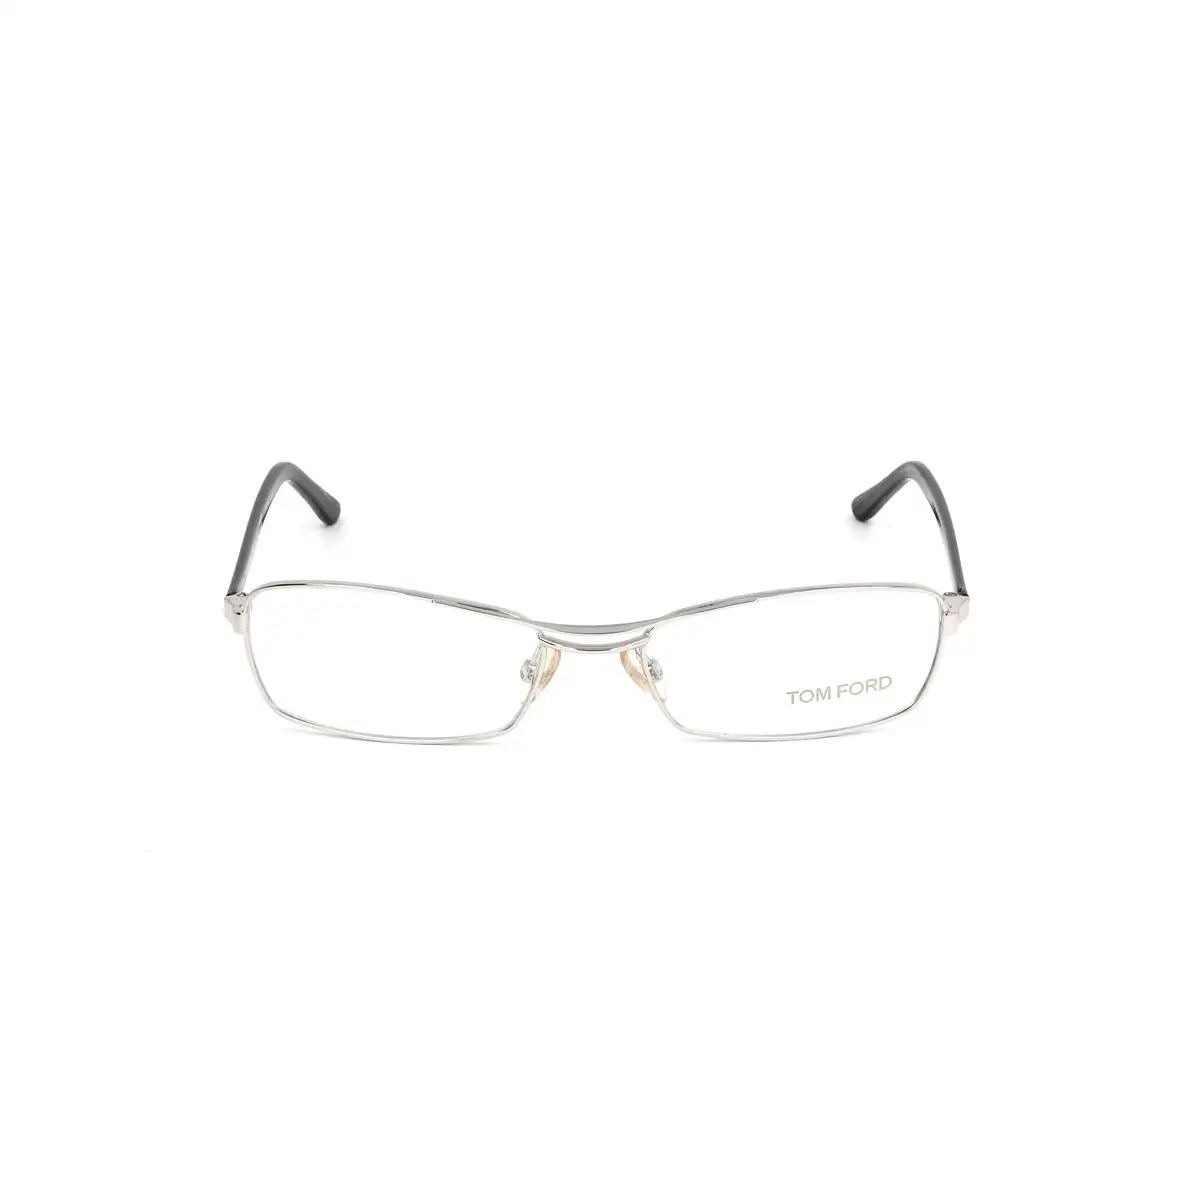 Monture de lunettes femme tom ford ft5024 751 52 argente_1018. DIAYTAR SENEGAL - Votre Source de Trouvailles uniques. Naviguez à travers notre catalogue et trouvez des articles qui vous distinguent et reflètent votre unicité.